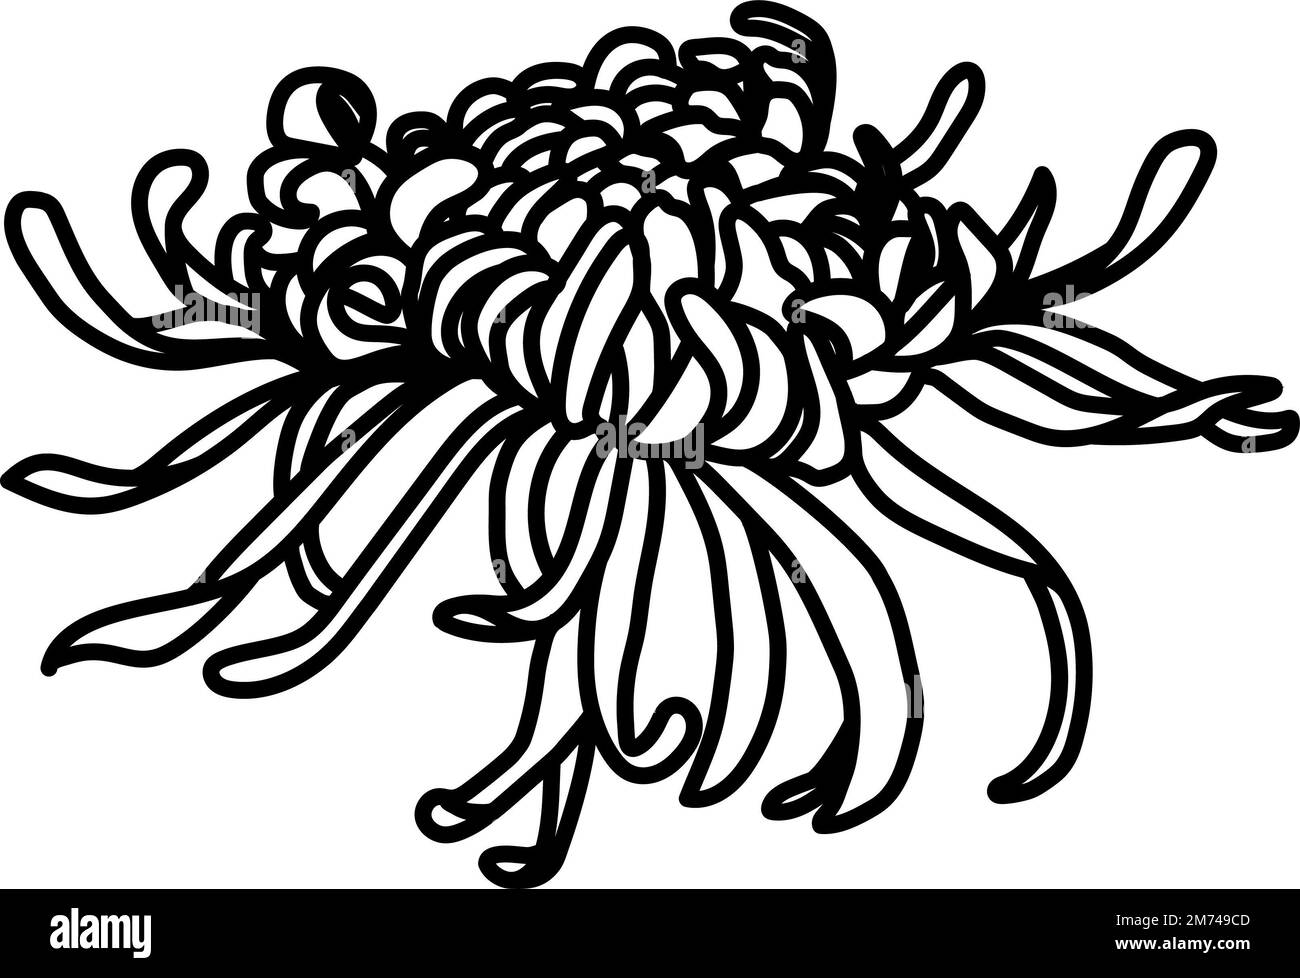 Aquarelle fleur lignes noires. Fleurs fleuries dessinées à la main avec aquarelle sur un fond blanc isolé. Parfait pour les invitations à un mariage. Banque D'Images